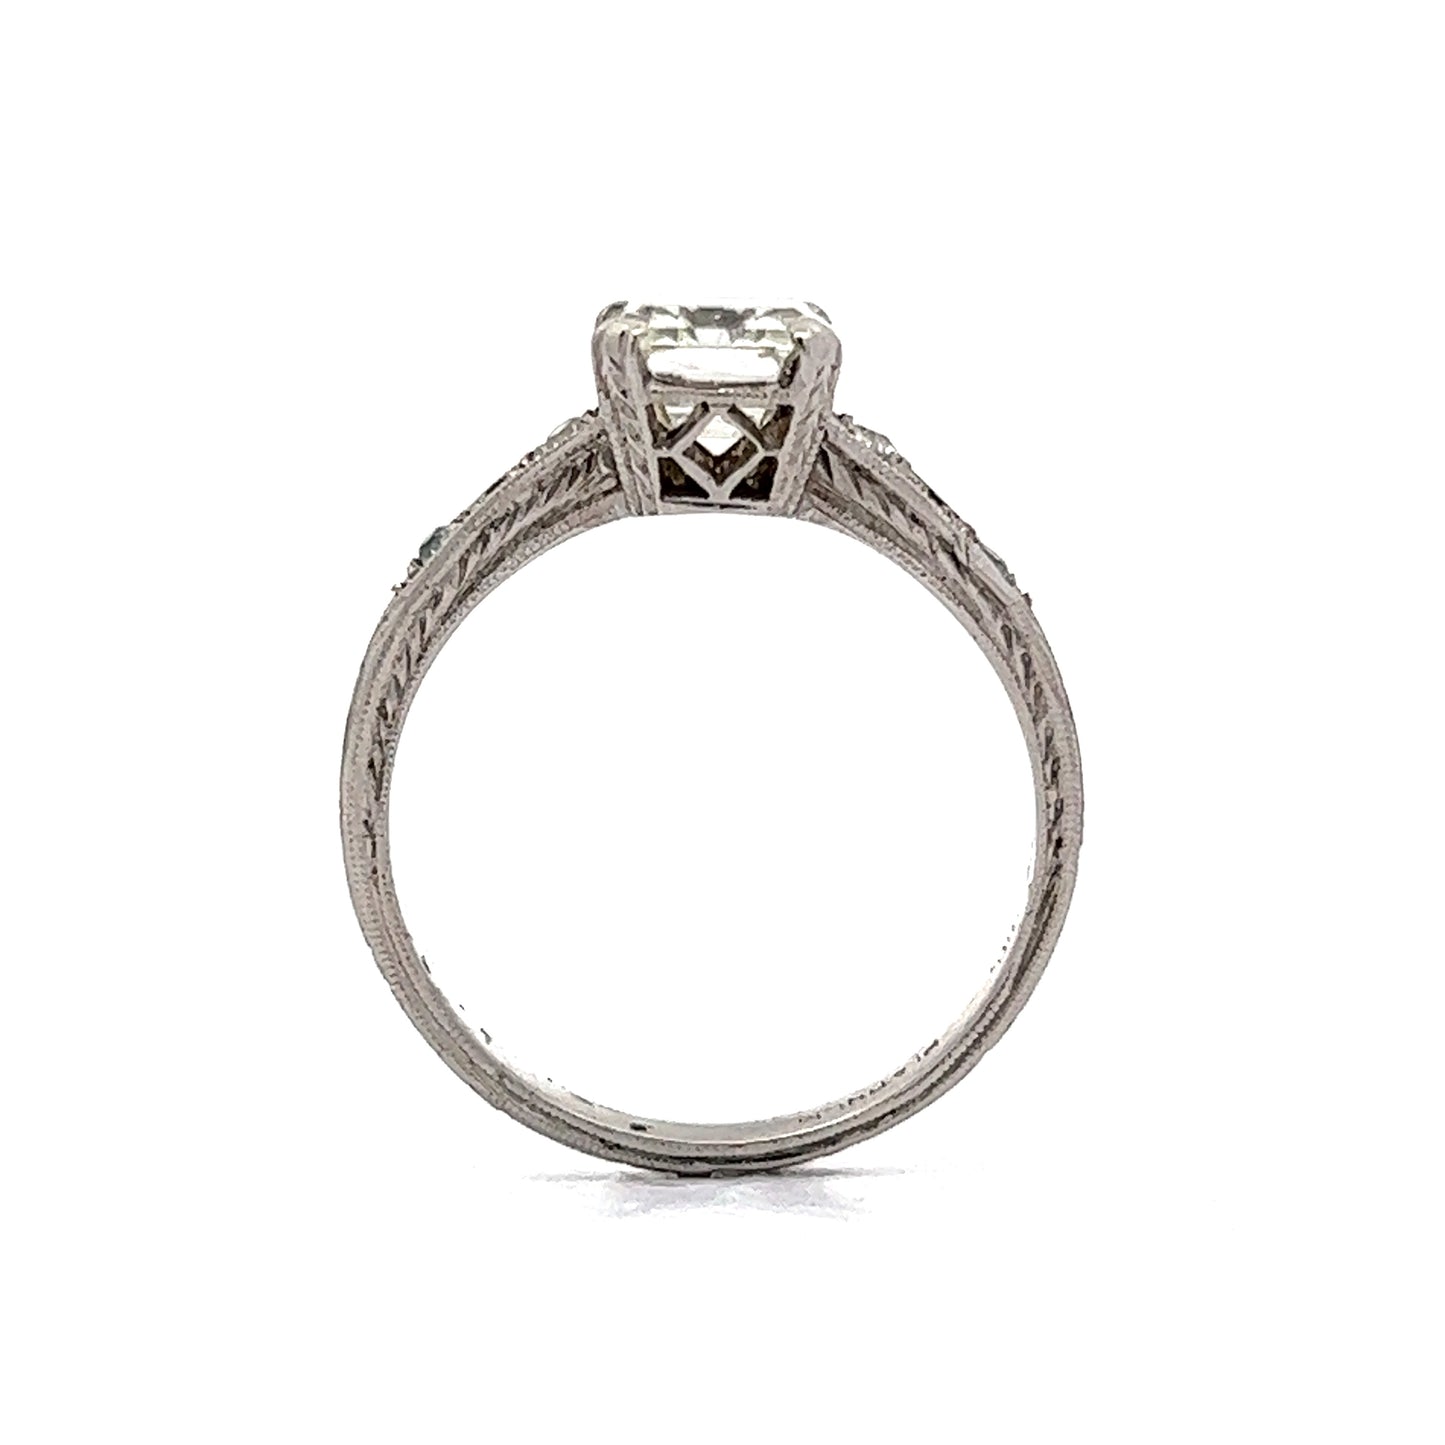 2.07 Vintage Art Deco Emerald Cut Diamond Engagement Ring in Platinum